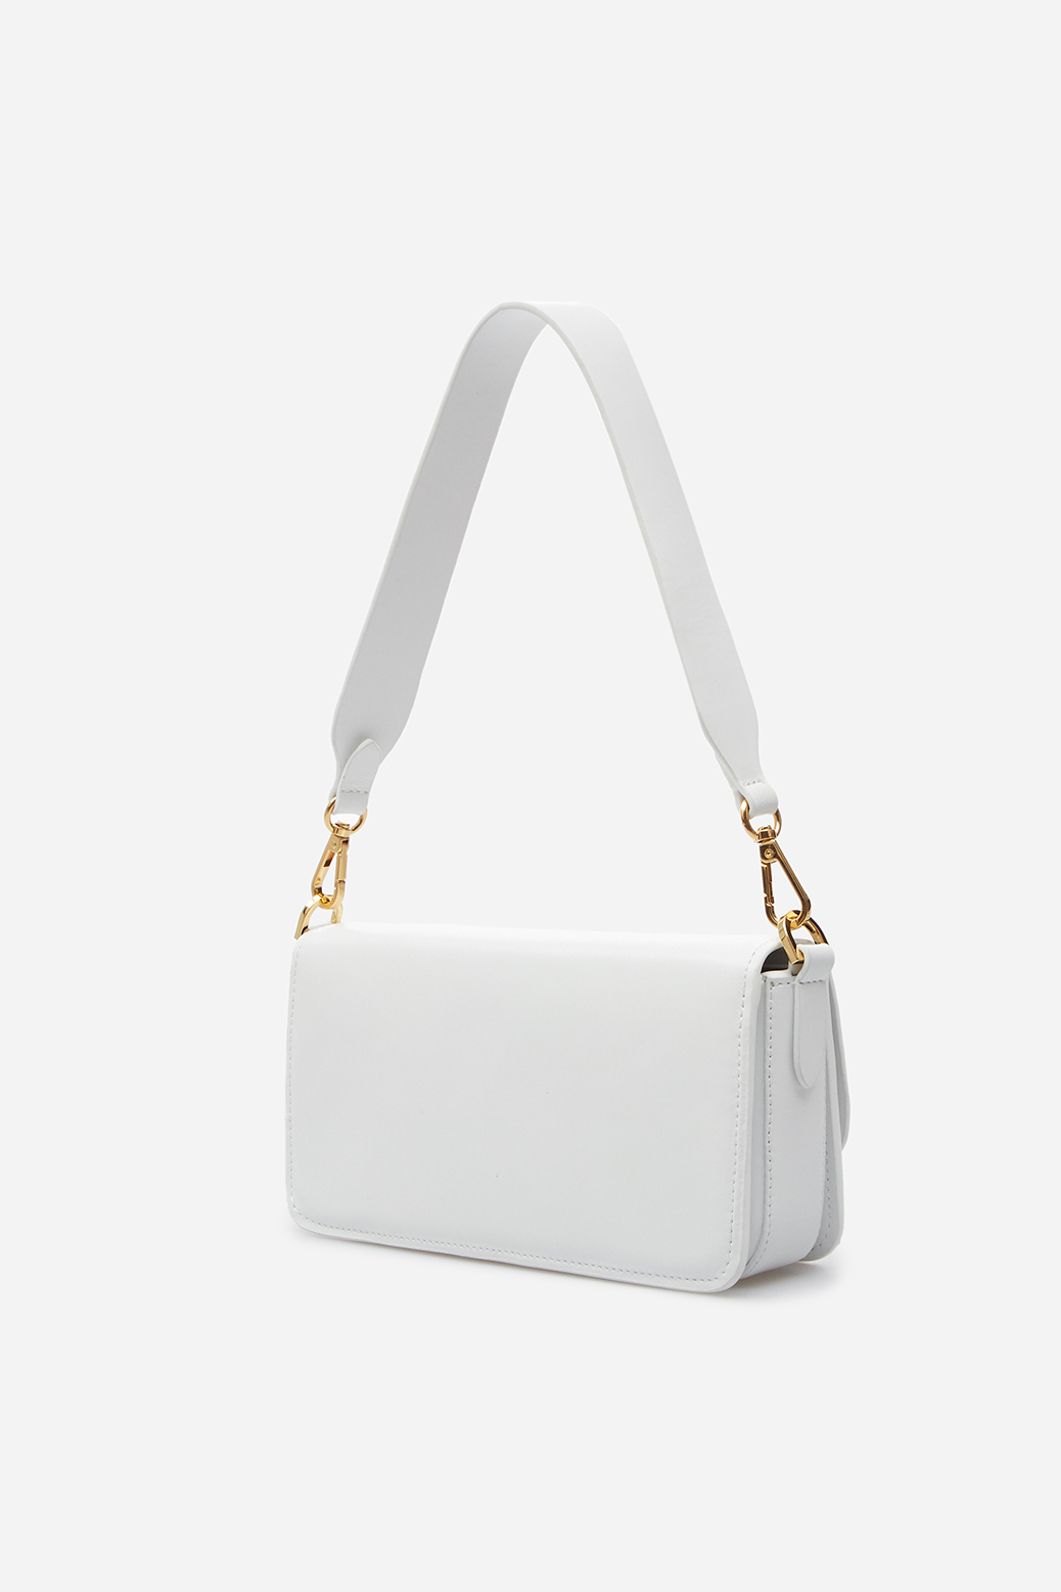 Harper white leather
baguette bag /gold/